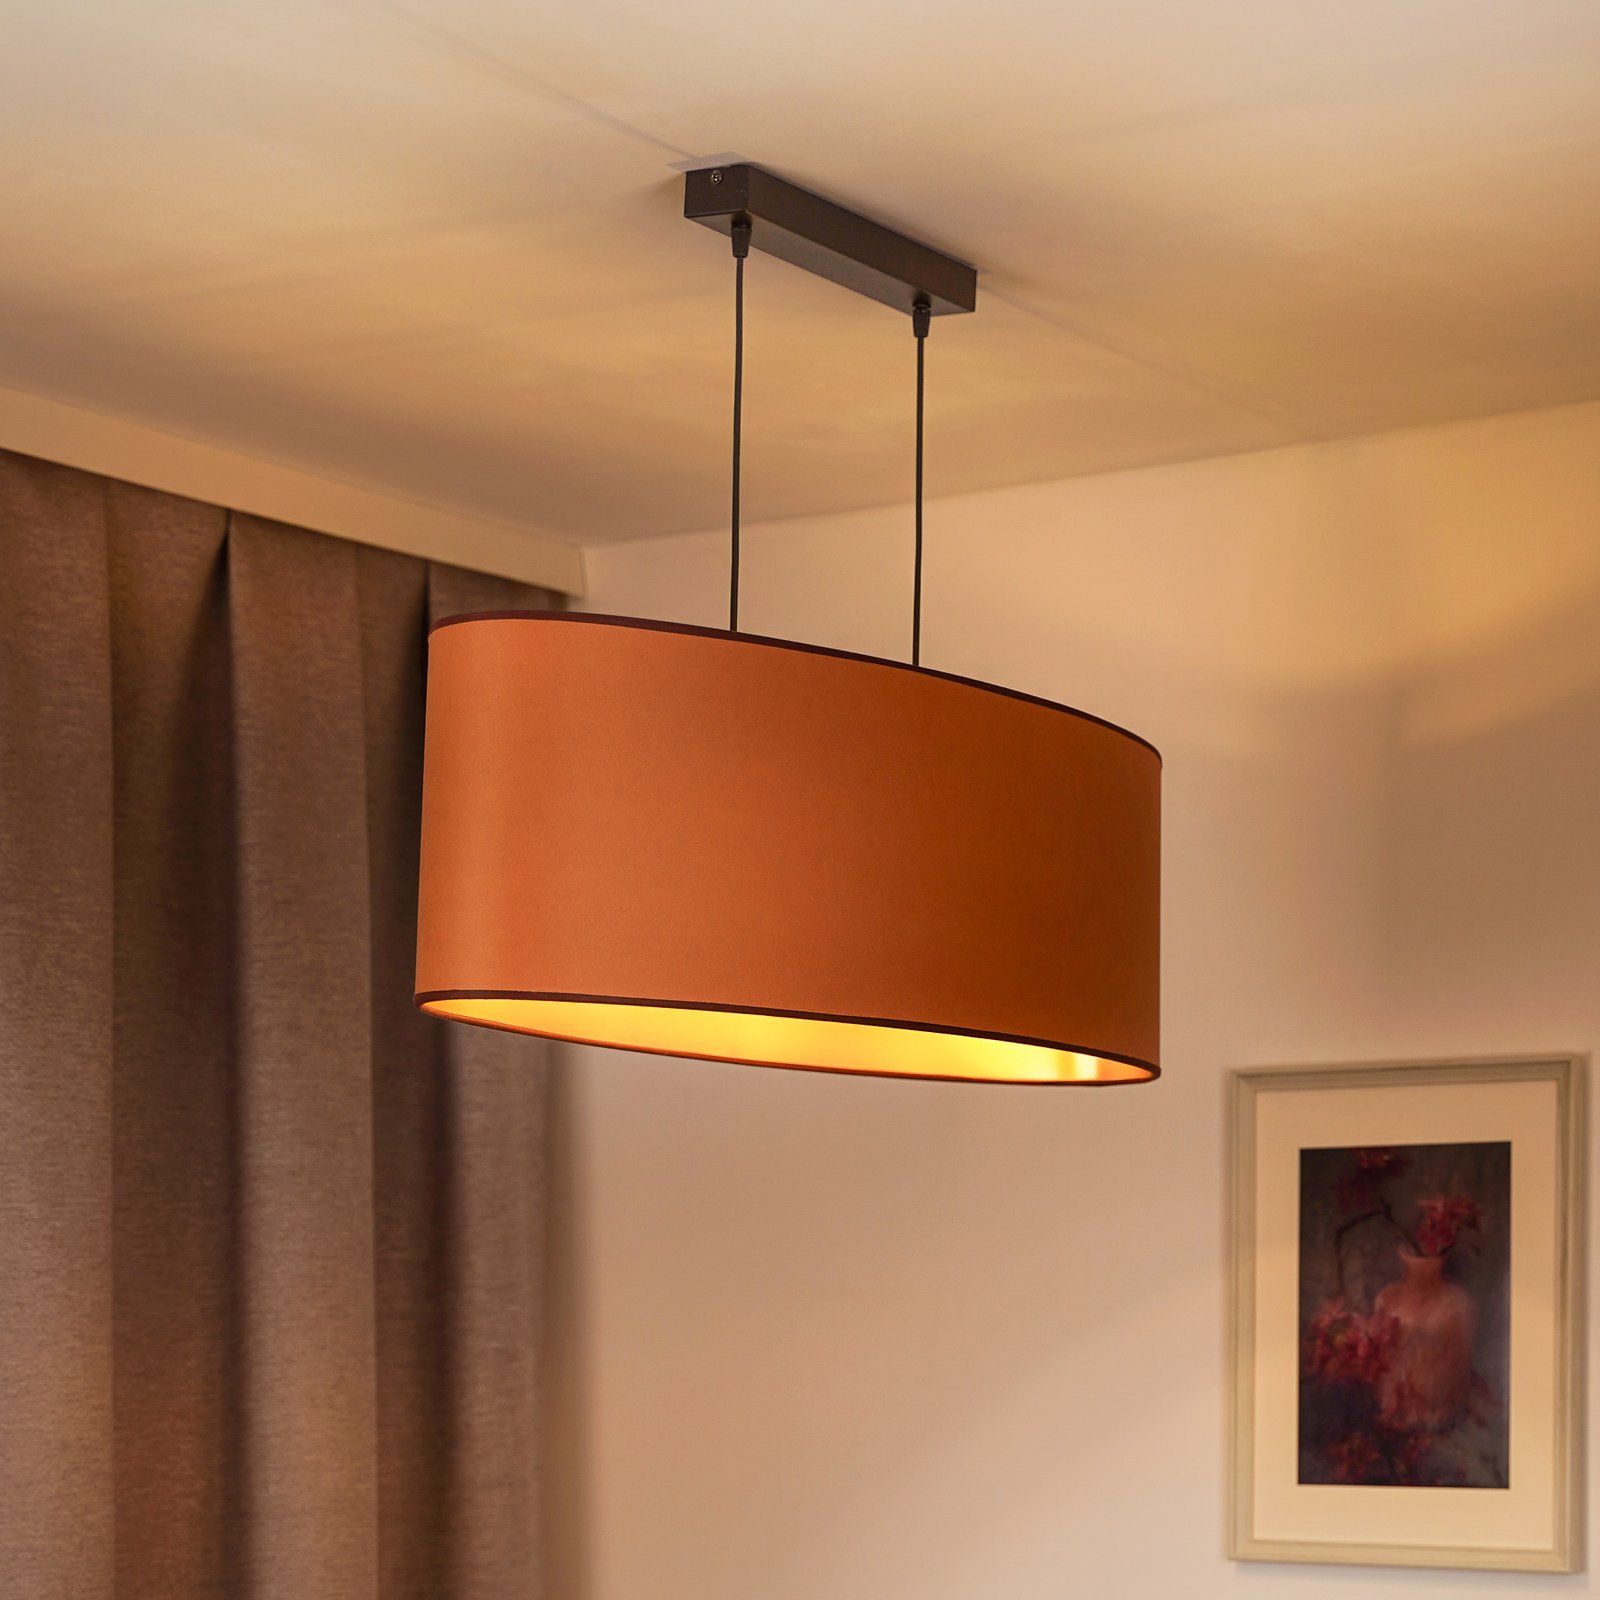 Envostar hanglamp Idun, bruin, 80 cm natuurlijk veganistisch materiaal